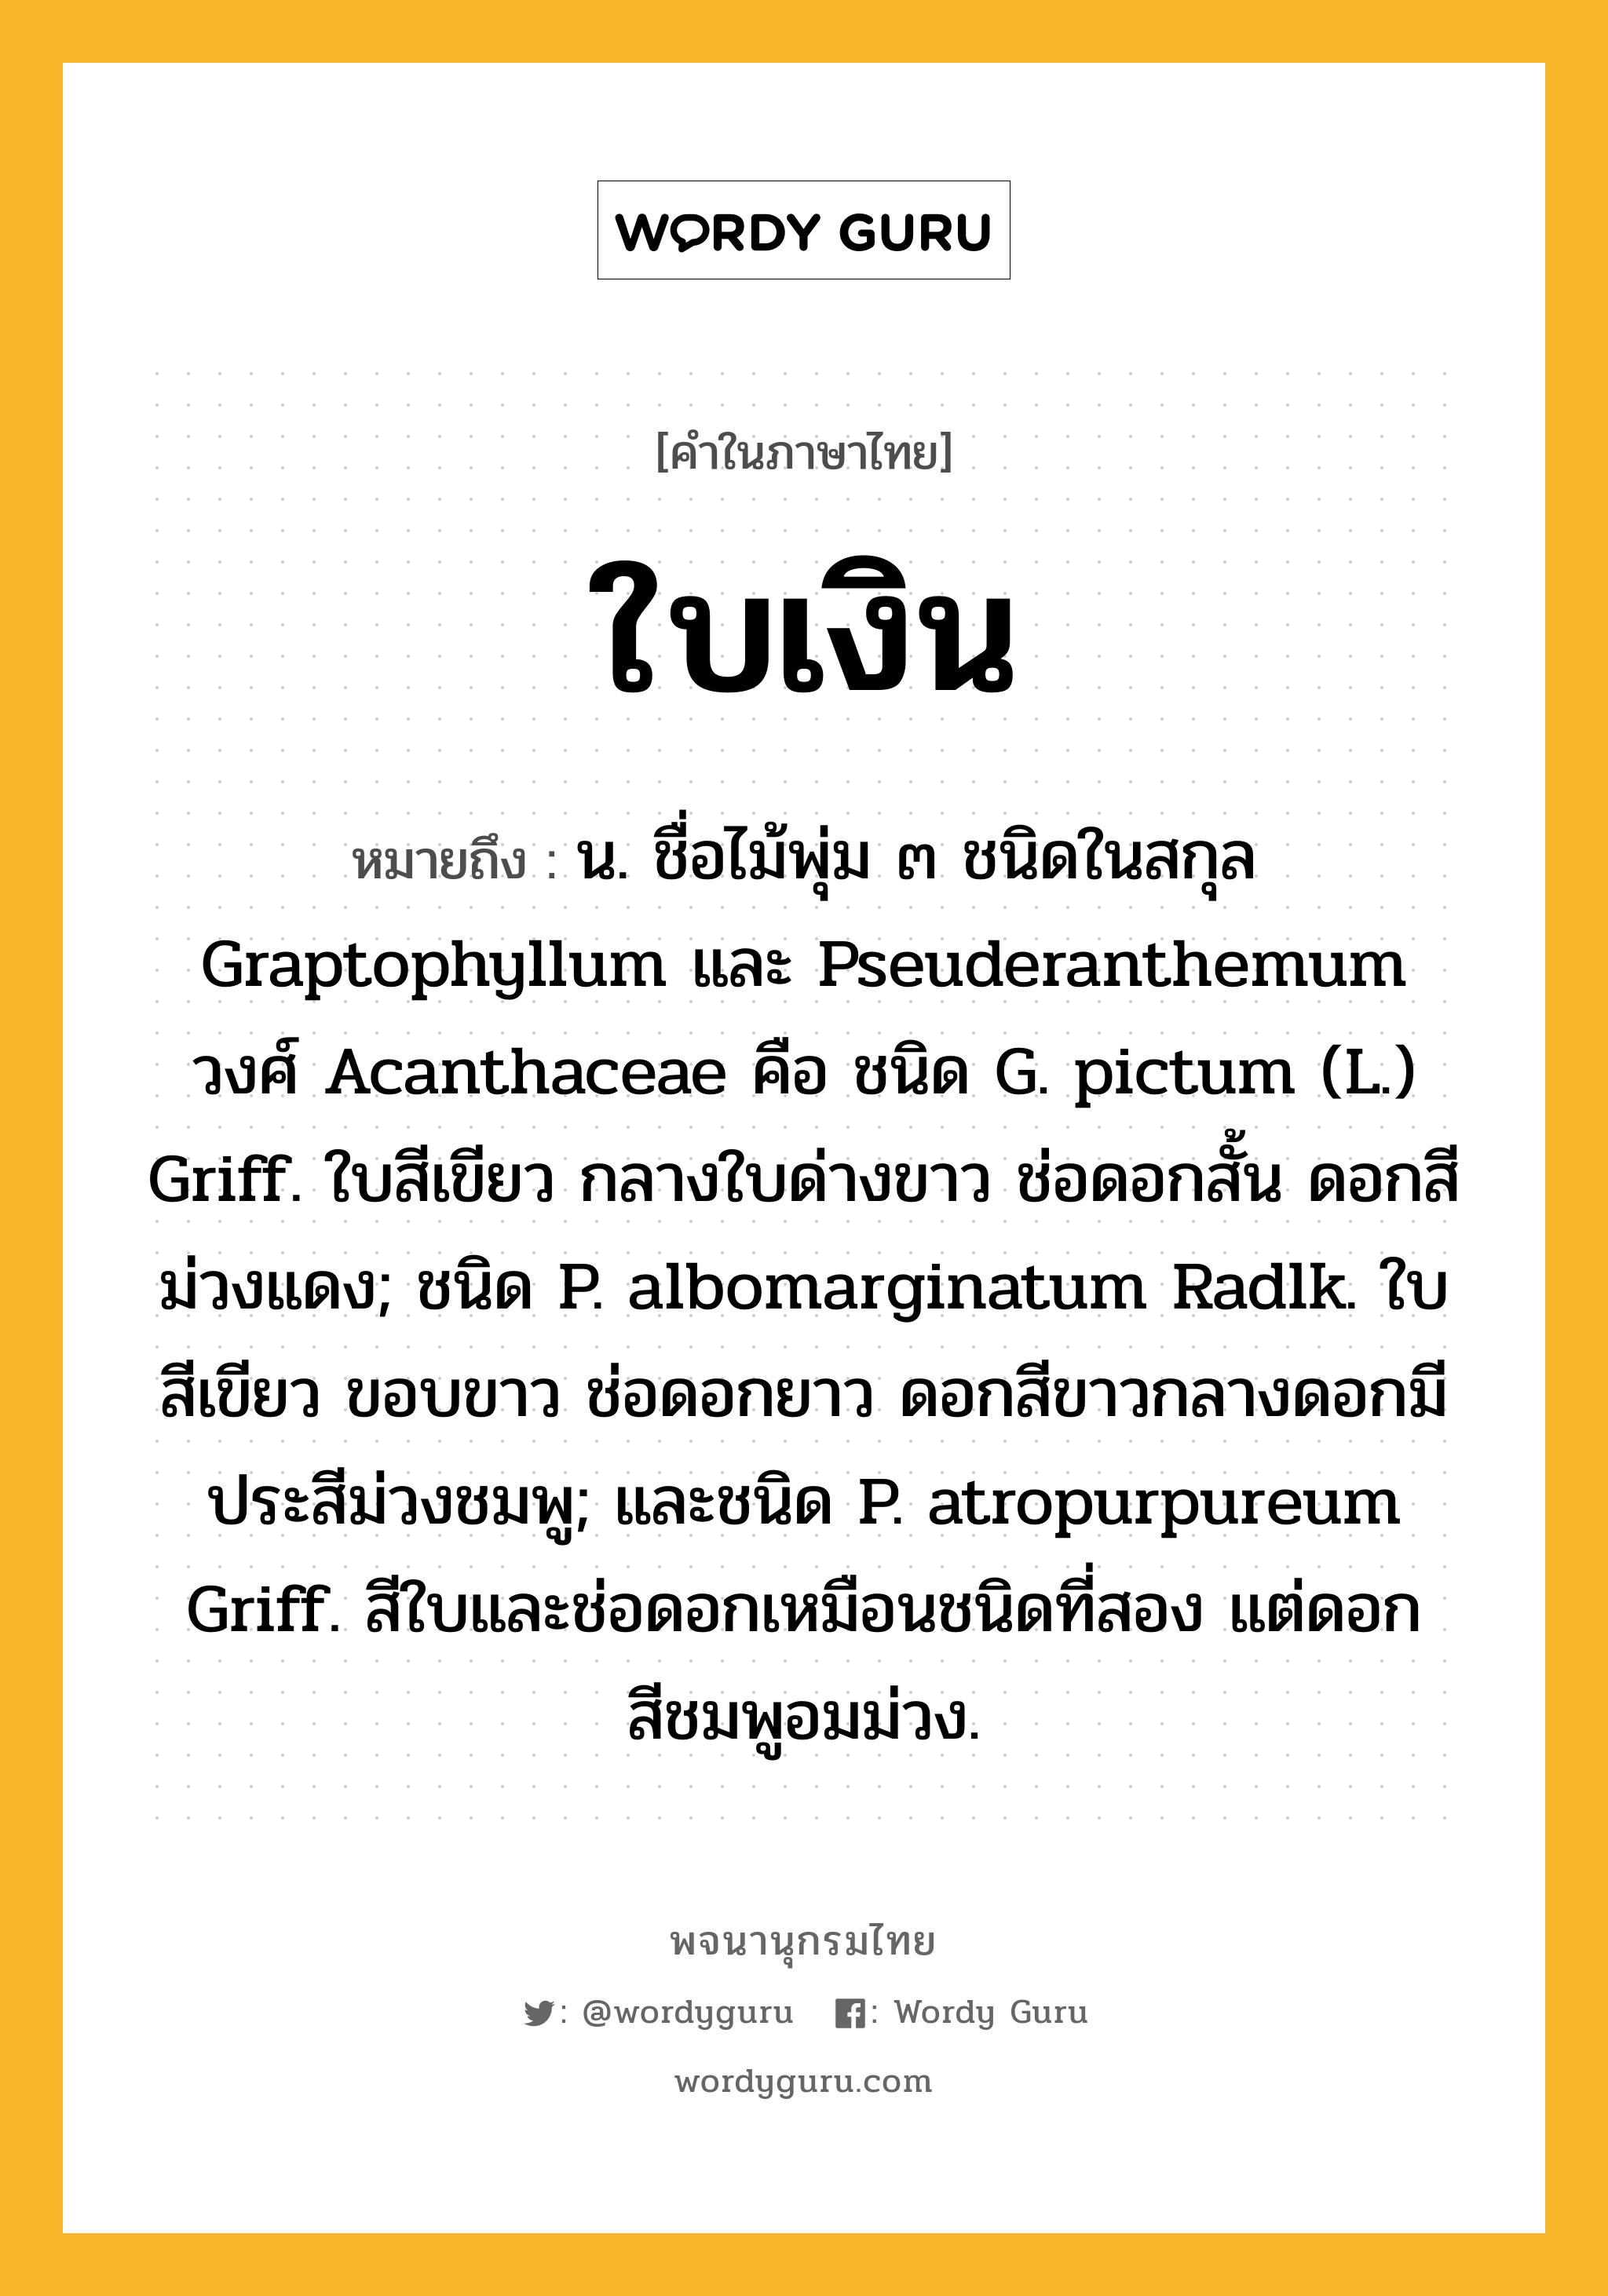 ใบเงิน ความหมาย หมายถึงอะไร?, คำในภาษาไทย ใบเงิน หมายถึง น. ชื่อไม้พุ่ม ๓ ชนิดในสกุล Graptophyllum และ Pseuderanthemum วงศ์ Acanthaceae คือ ชนิด G. pictum (L.) Griff. ใบสีเขียว กลางใบด่างขาว ช่อดอกสั้น ดอกสีม่วงแดง; ชนิด P. albomarginatum Radlk. ใบสีเขียว ขอบขาว ช่อดอกยาว ดอกสีขาวกลางดอกมีประสีม่วงชมพู; และชนิด P. atropurpureum Griff. สีใบและช่อดอกเหมือนชนิดที่สอง แต่ดอกสีชมพูอมม่วง.